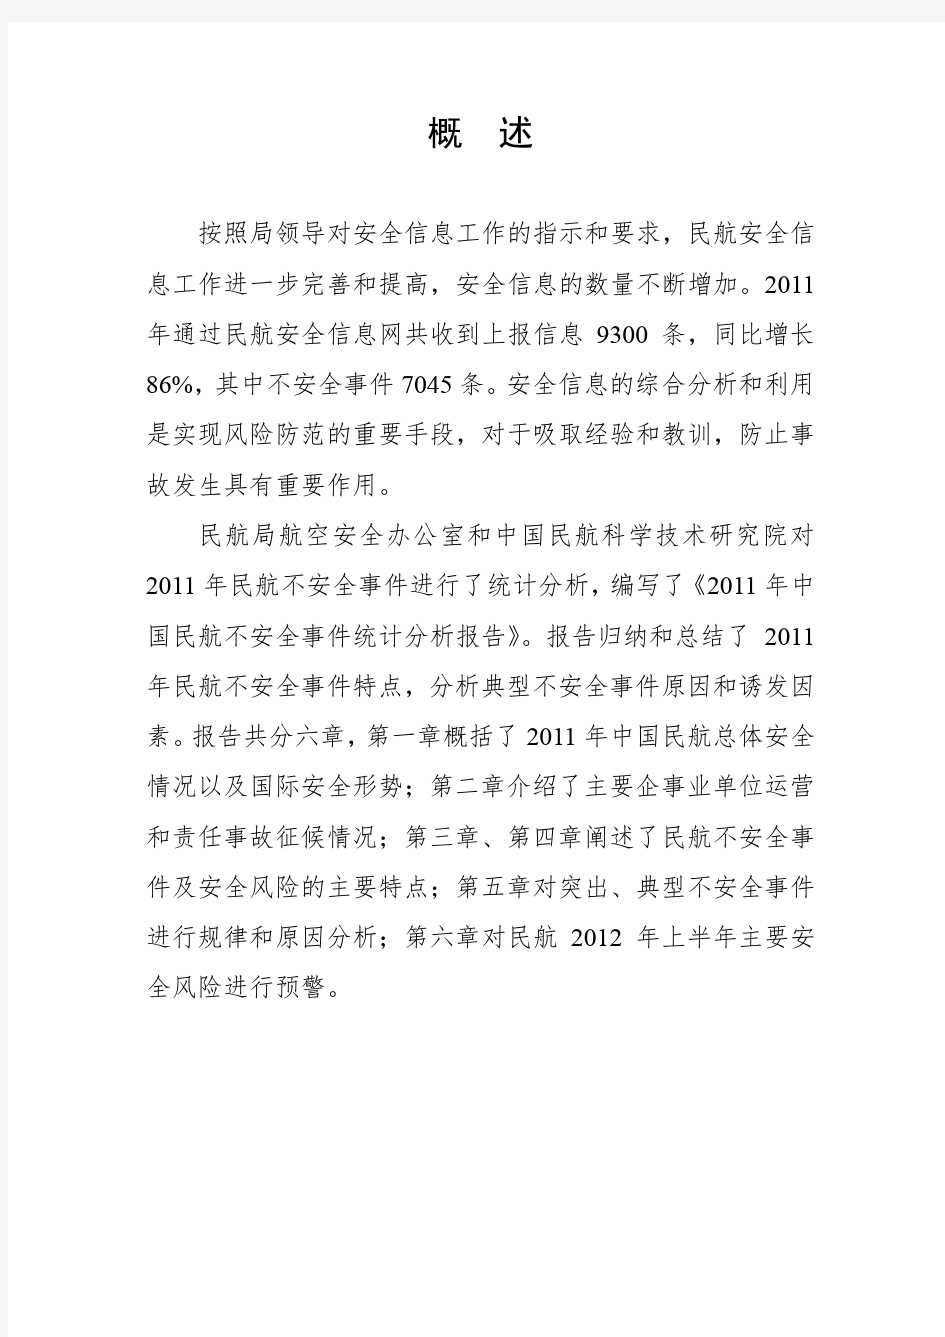 2011中国民航不安全事件统计分析报告